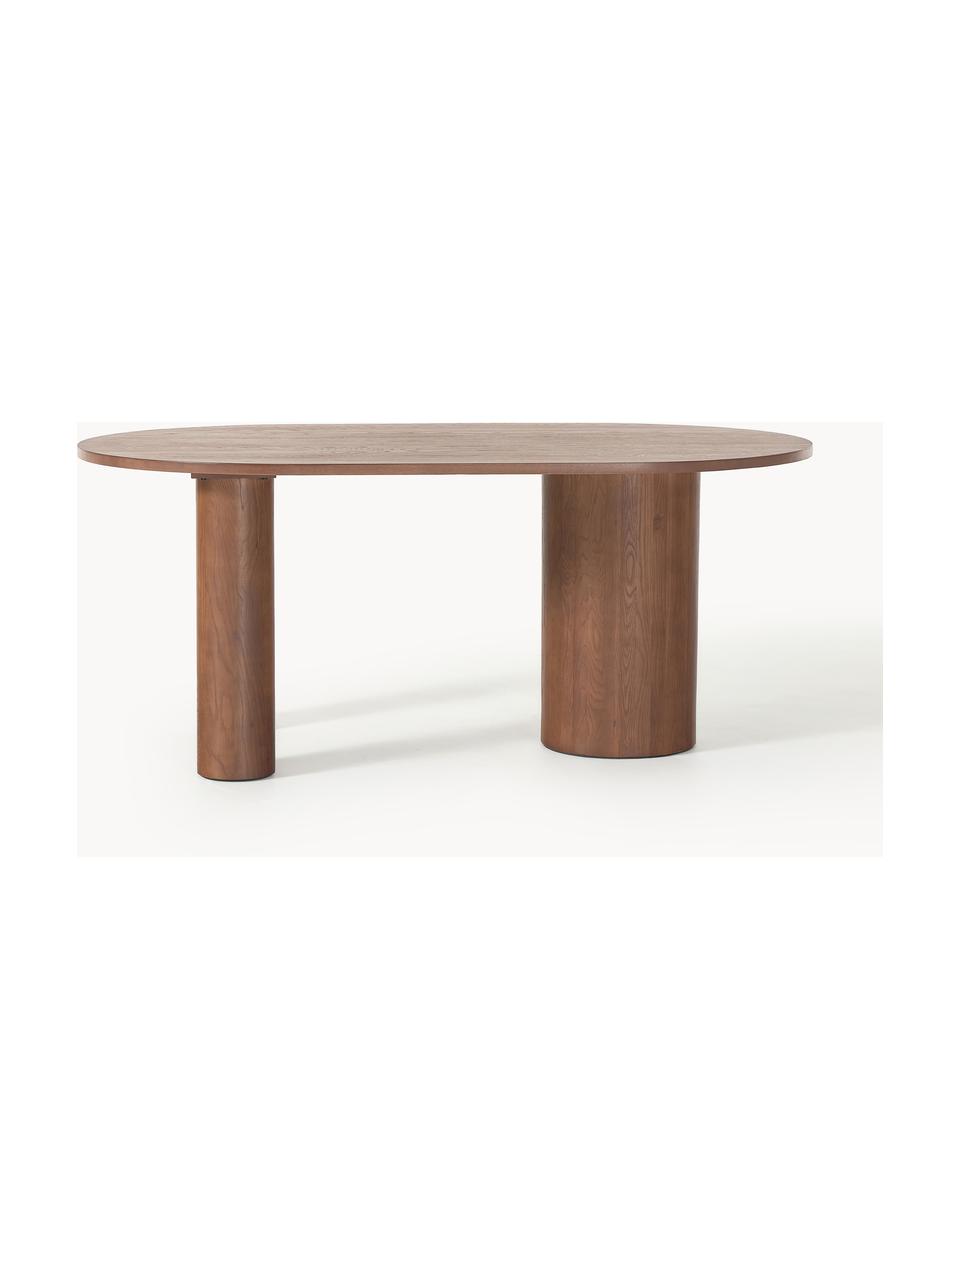 Oválný jídelní stůl z dubového dřeva Dunia, 180 x 110 cm, Masivní dubové dřevo, olejované

Tento produkt je vyroben z udržitelných zdrojů dřeva s certifikací FSC®., Dubové dřevo, tmavě olejované, Š 180 cm, H 110 cm